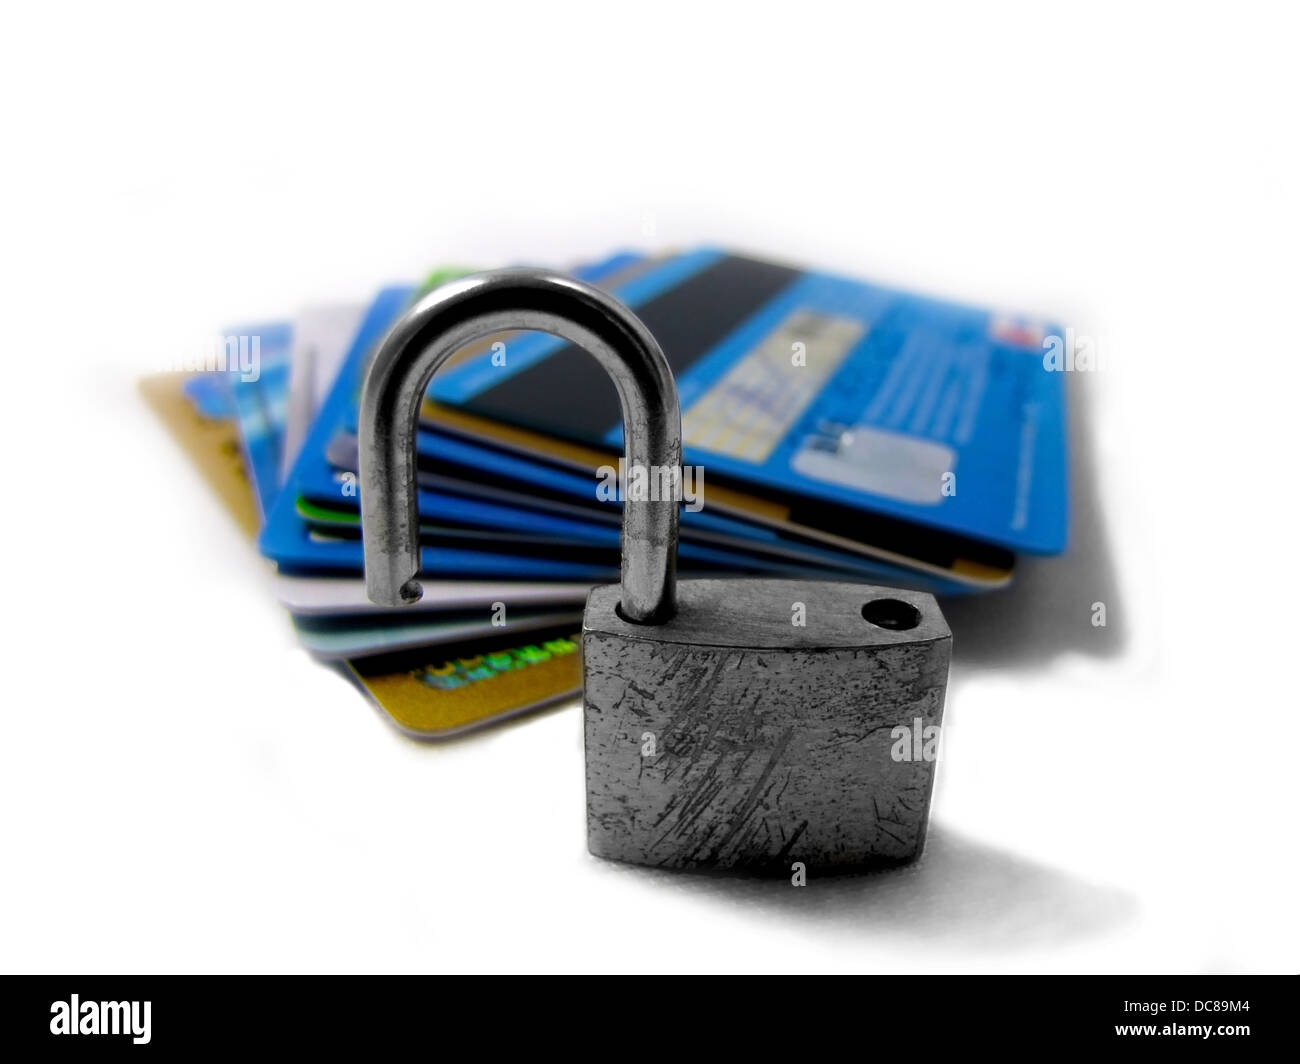 Desbloqueado y el robo de identidad pin inseguros imagen conceptual Foto de stock